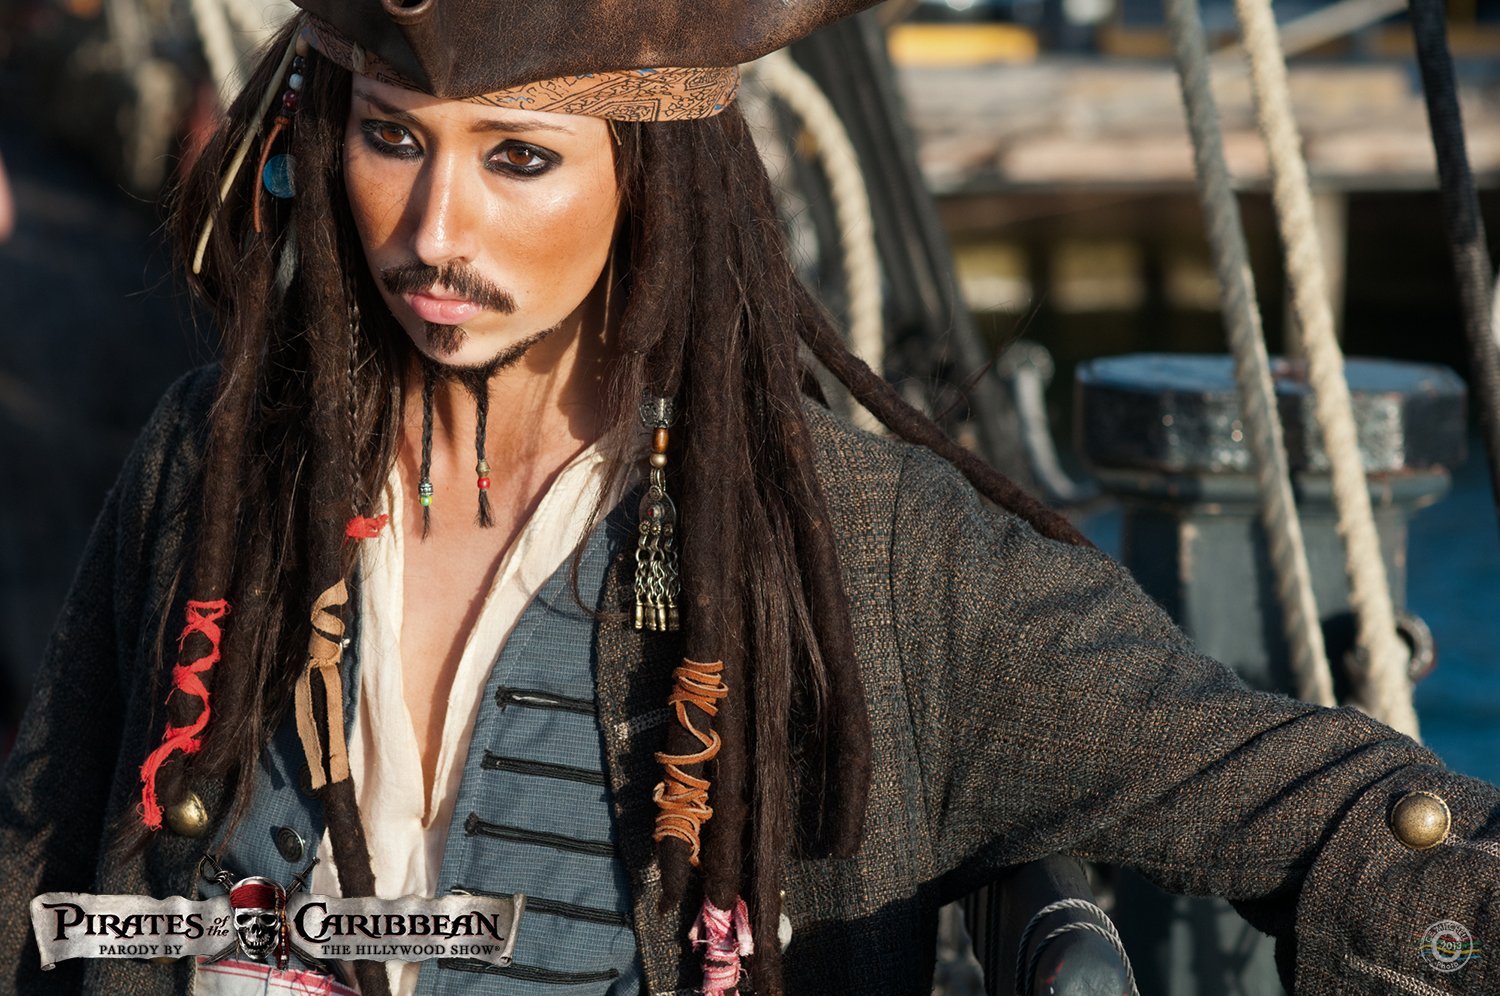 Пираты пародия. The Hillywood show Parody пираты Карибского моря. Костюм пирата Карибского моря. Ю Тенфьюрд Салли дочь пирата. Пираты Карибского моря пародия.